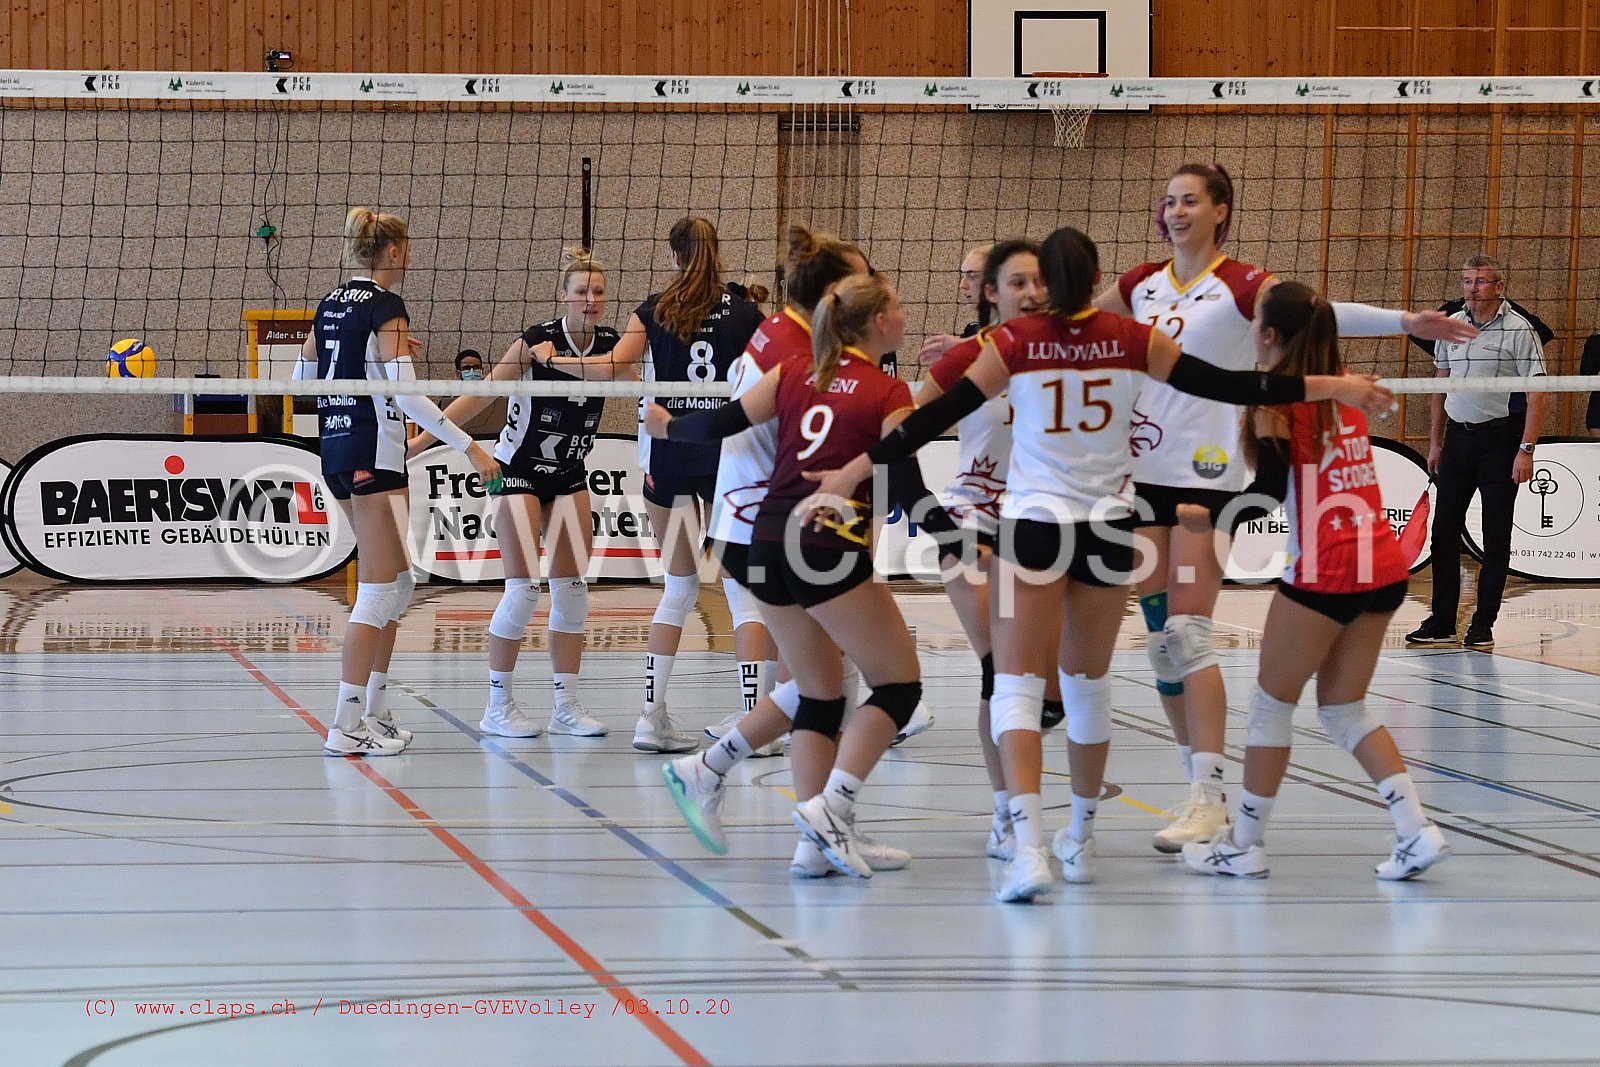 Duedingen - Genève Volley